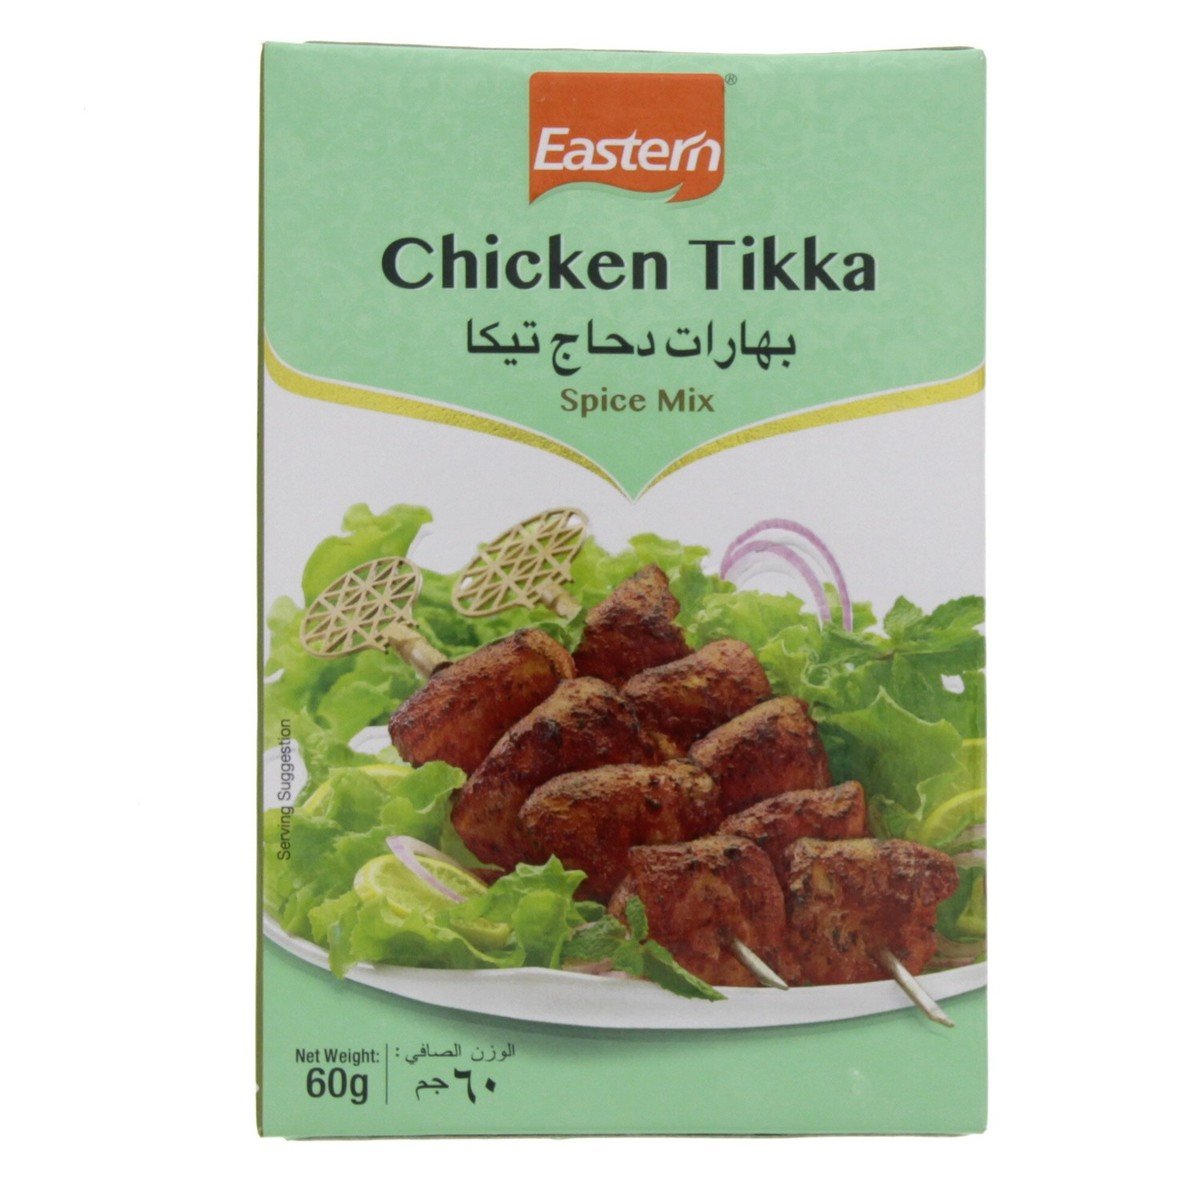 Eastern Chicken Tikka Spice Mix 60 g